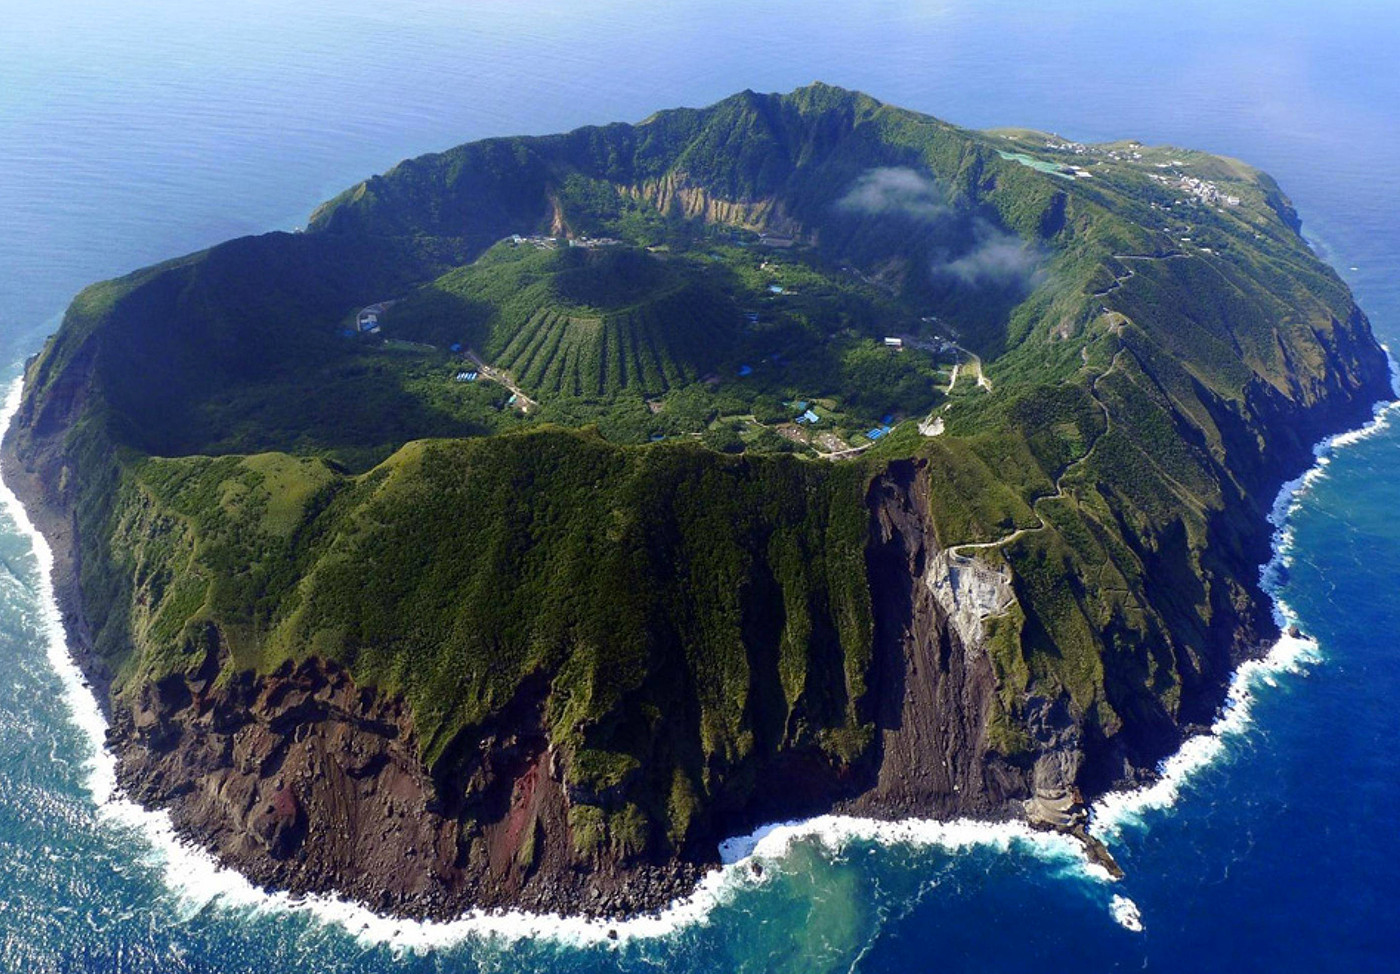 Hòn đảo núi lửa nằm biệt lập giữa biển khơi như thiên đường dưới hạ giới - 2